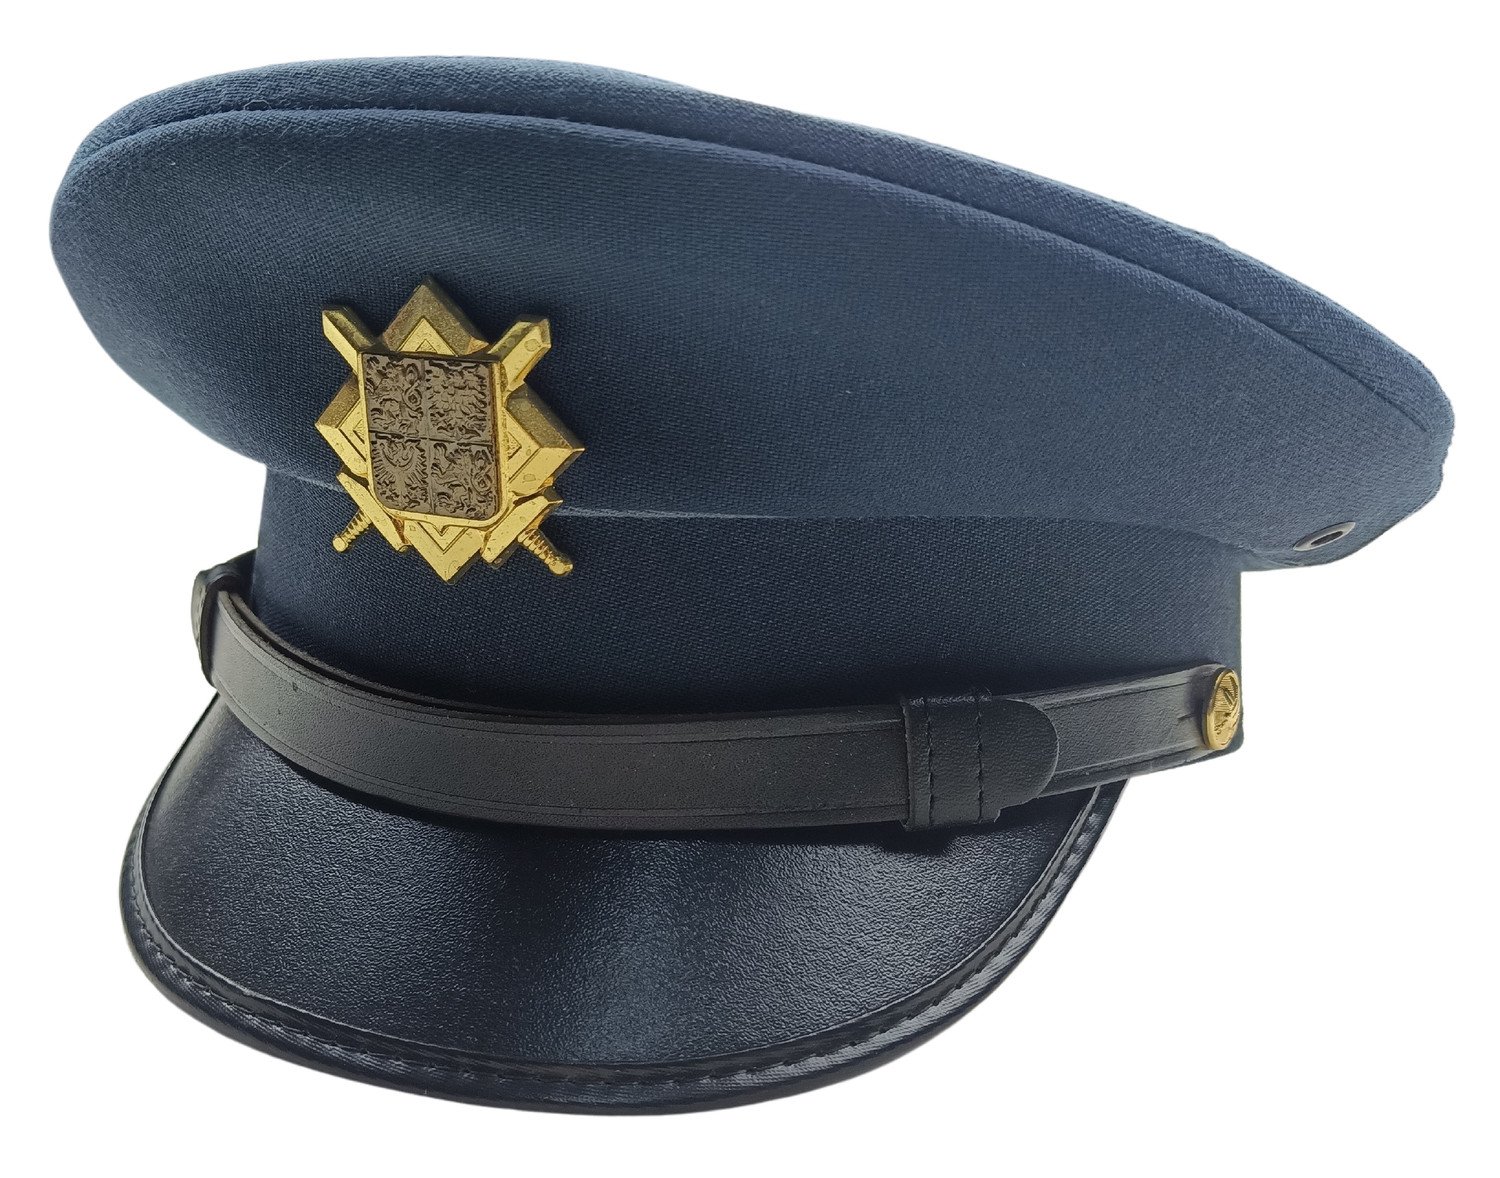 Brigadýrka služební s odznakem AČR modrá vz.97 vzdušné síly originál Velikost: 54